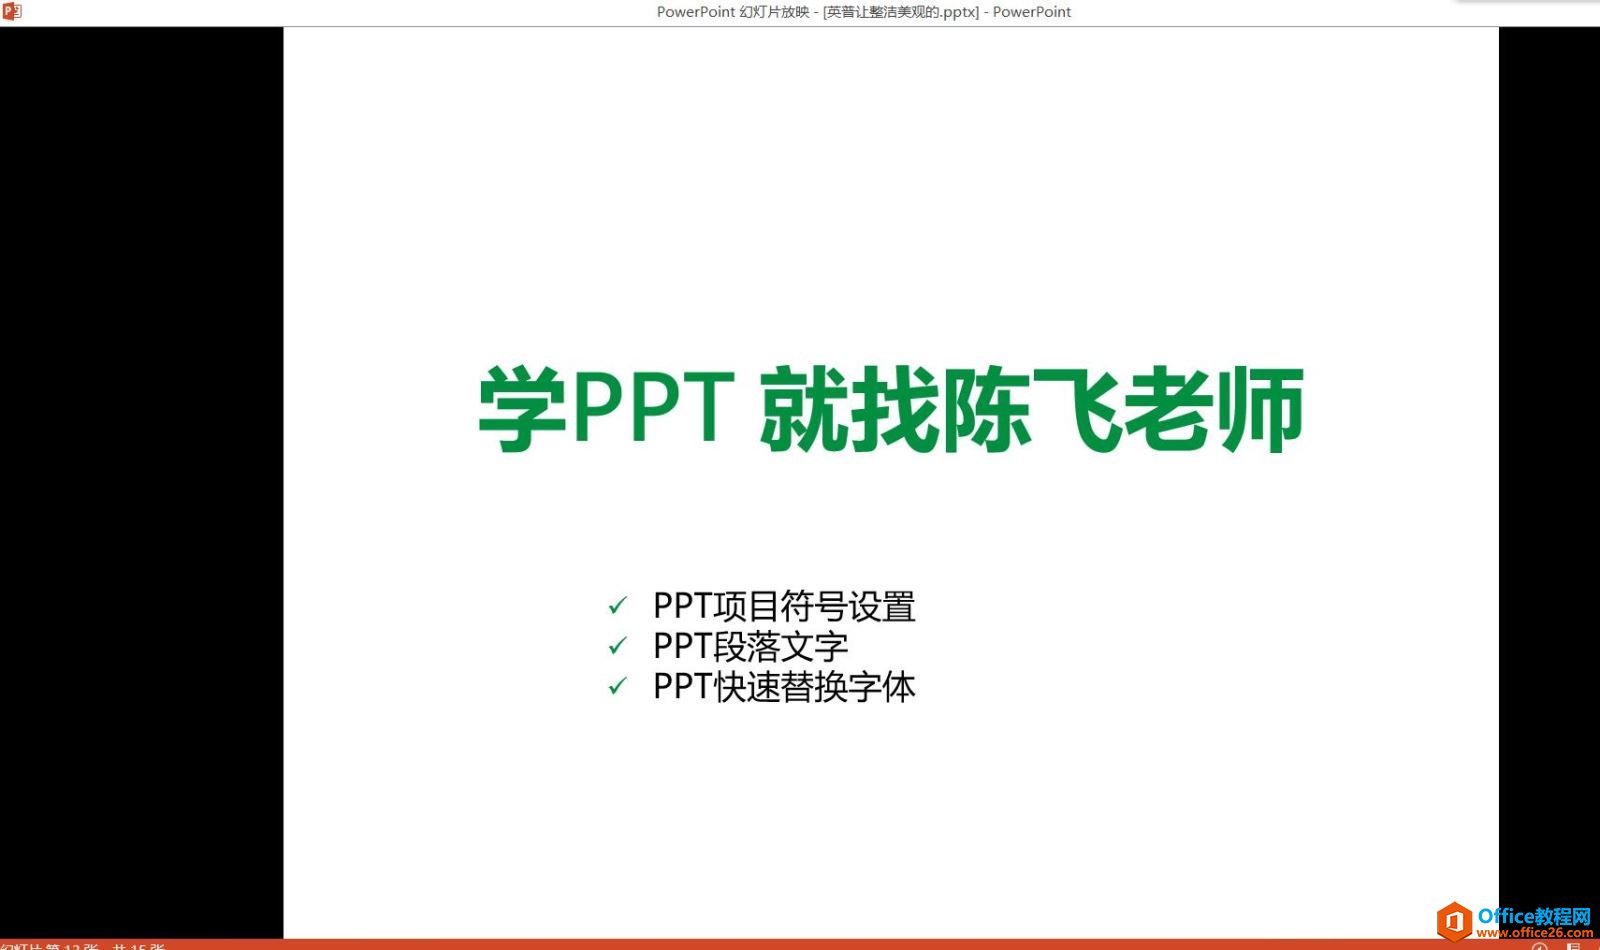 PPT 五个视图 编辑视图（普通，大纲），幻灯片浏览，备注，阅读视图